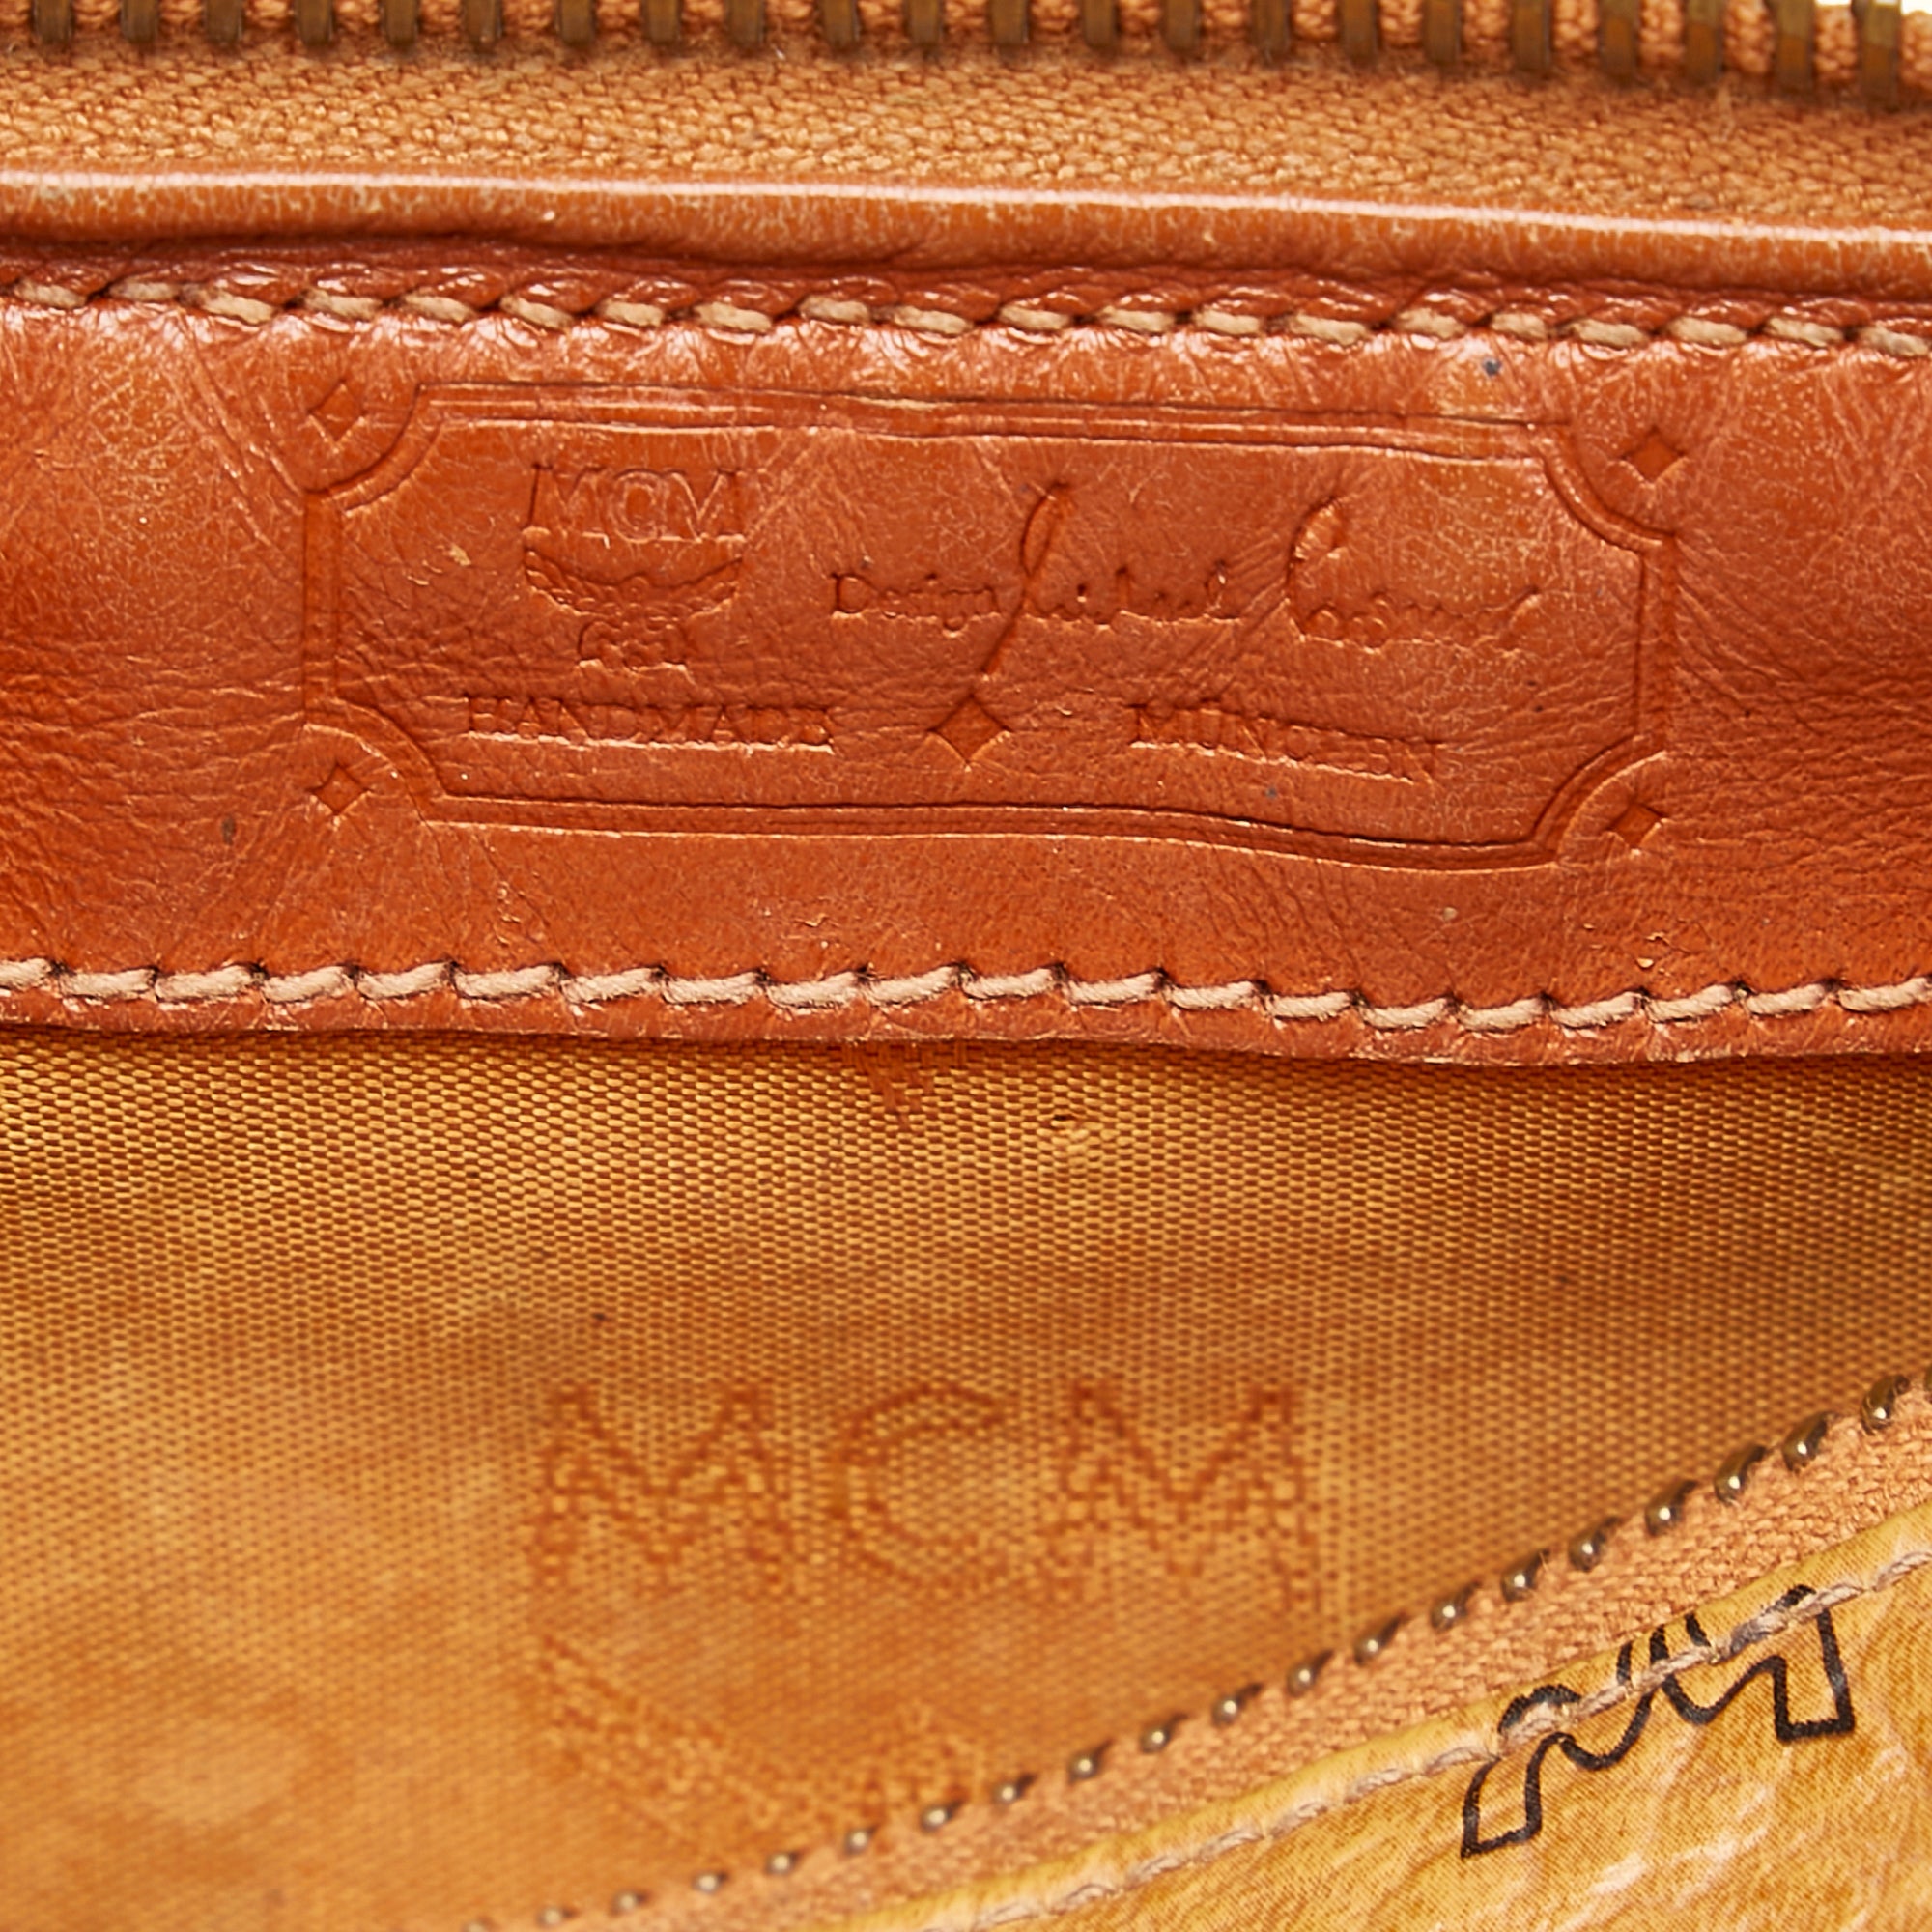 Brown MCM Visetos Mini Boston Bag – Designer Revival